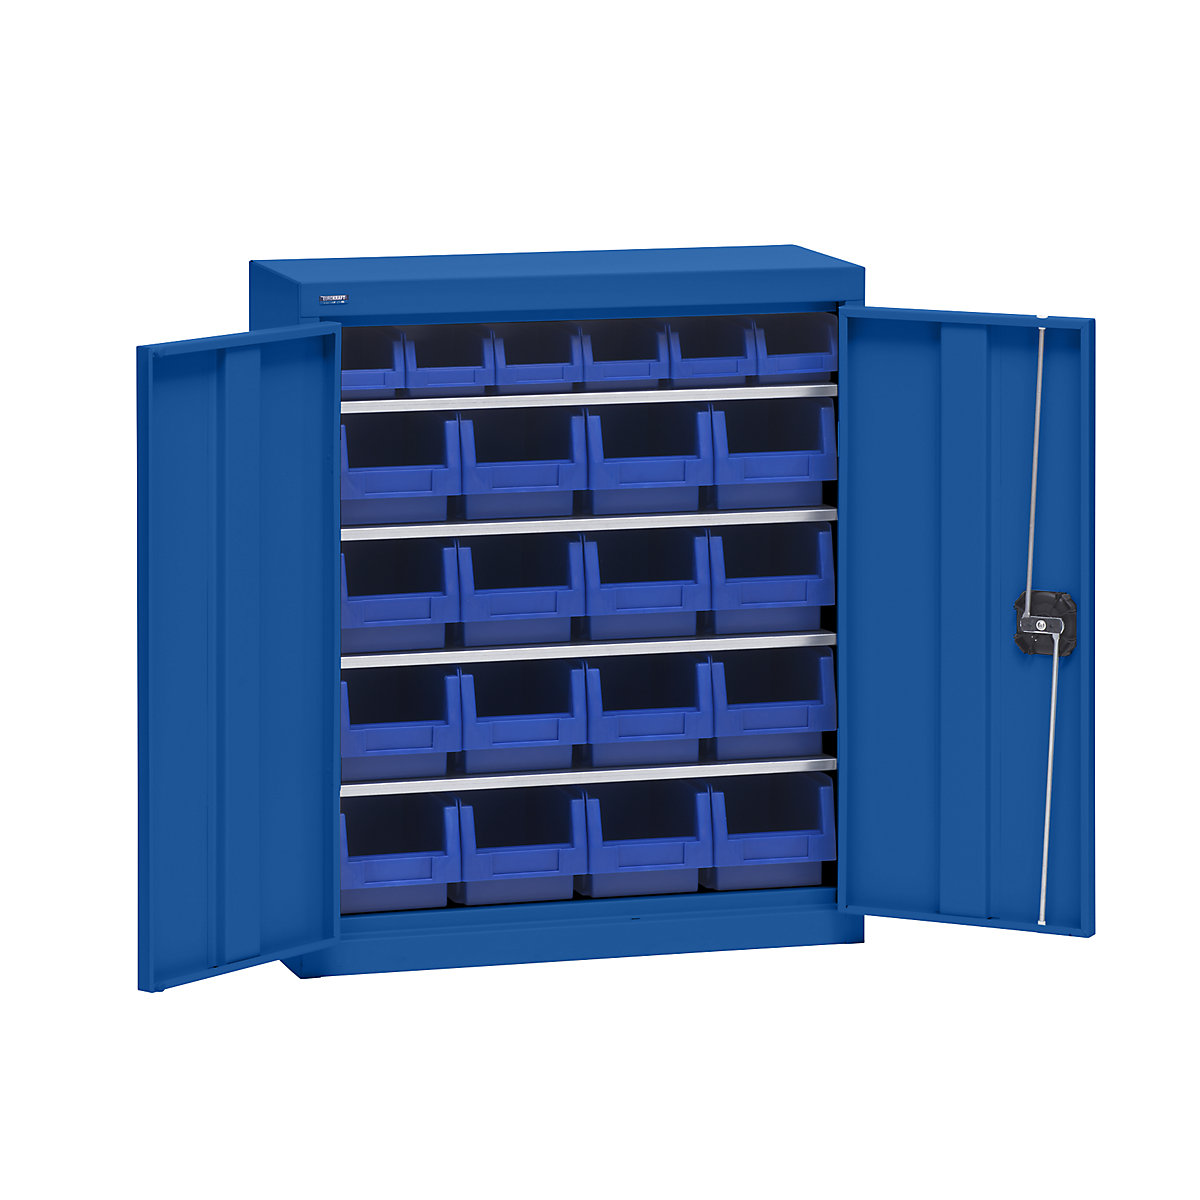 Materiaalkast met magazijnbakken – eurokraft pro, hoogte 780 mm, 4 legborden, gentiaanblauw-5